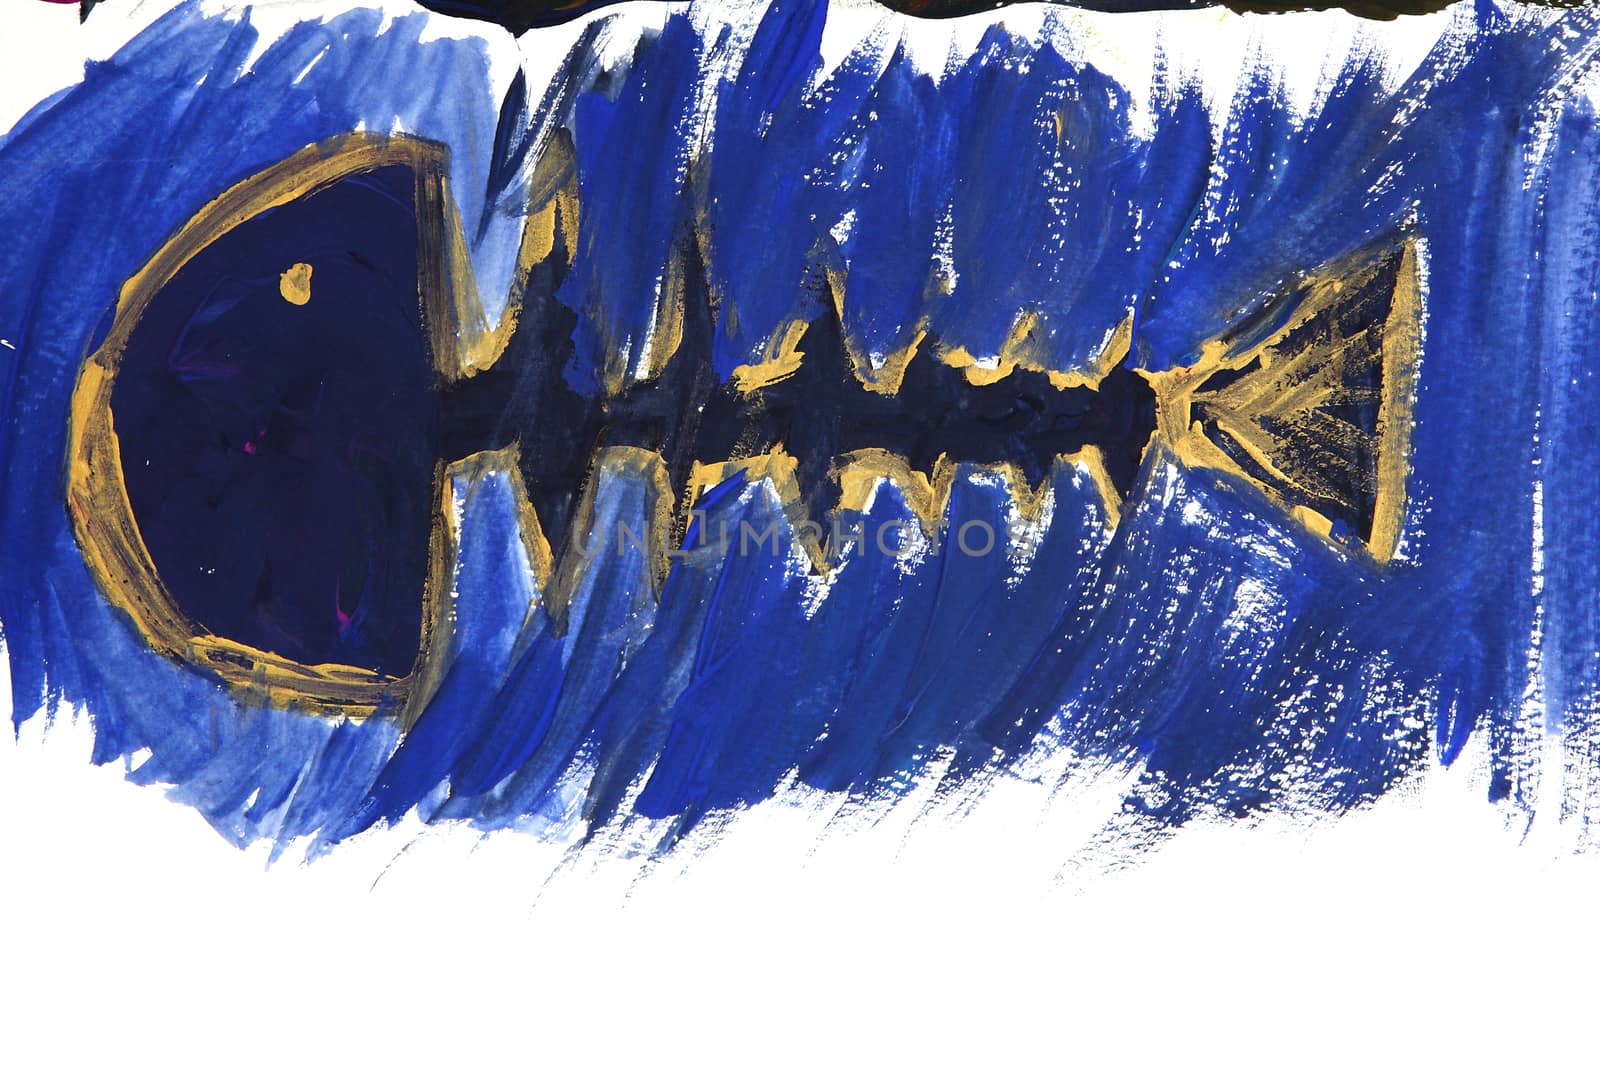 Abstract watercolor fish by piyato